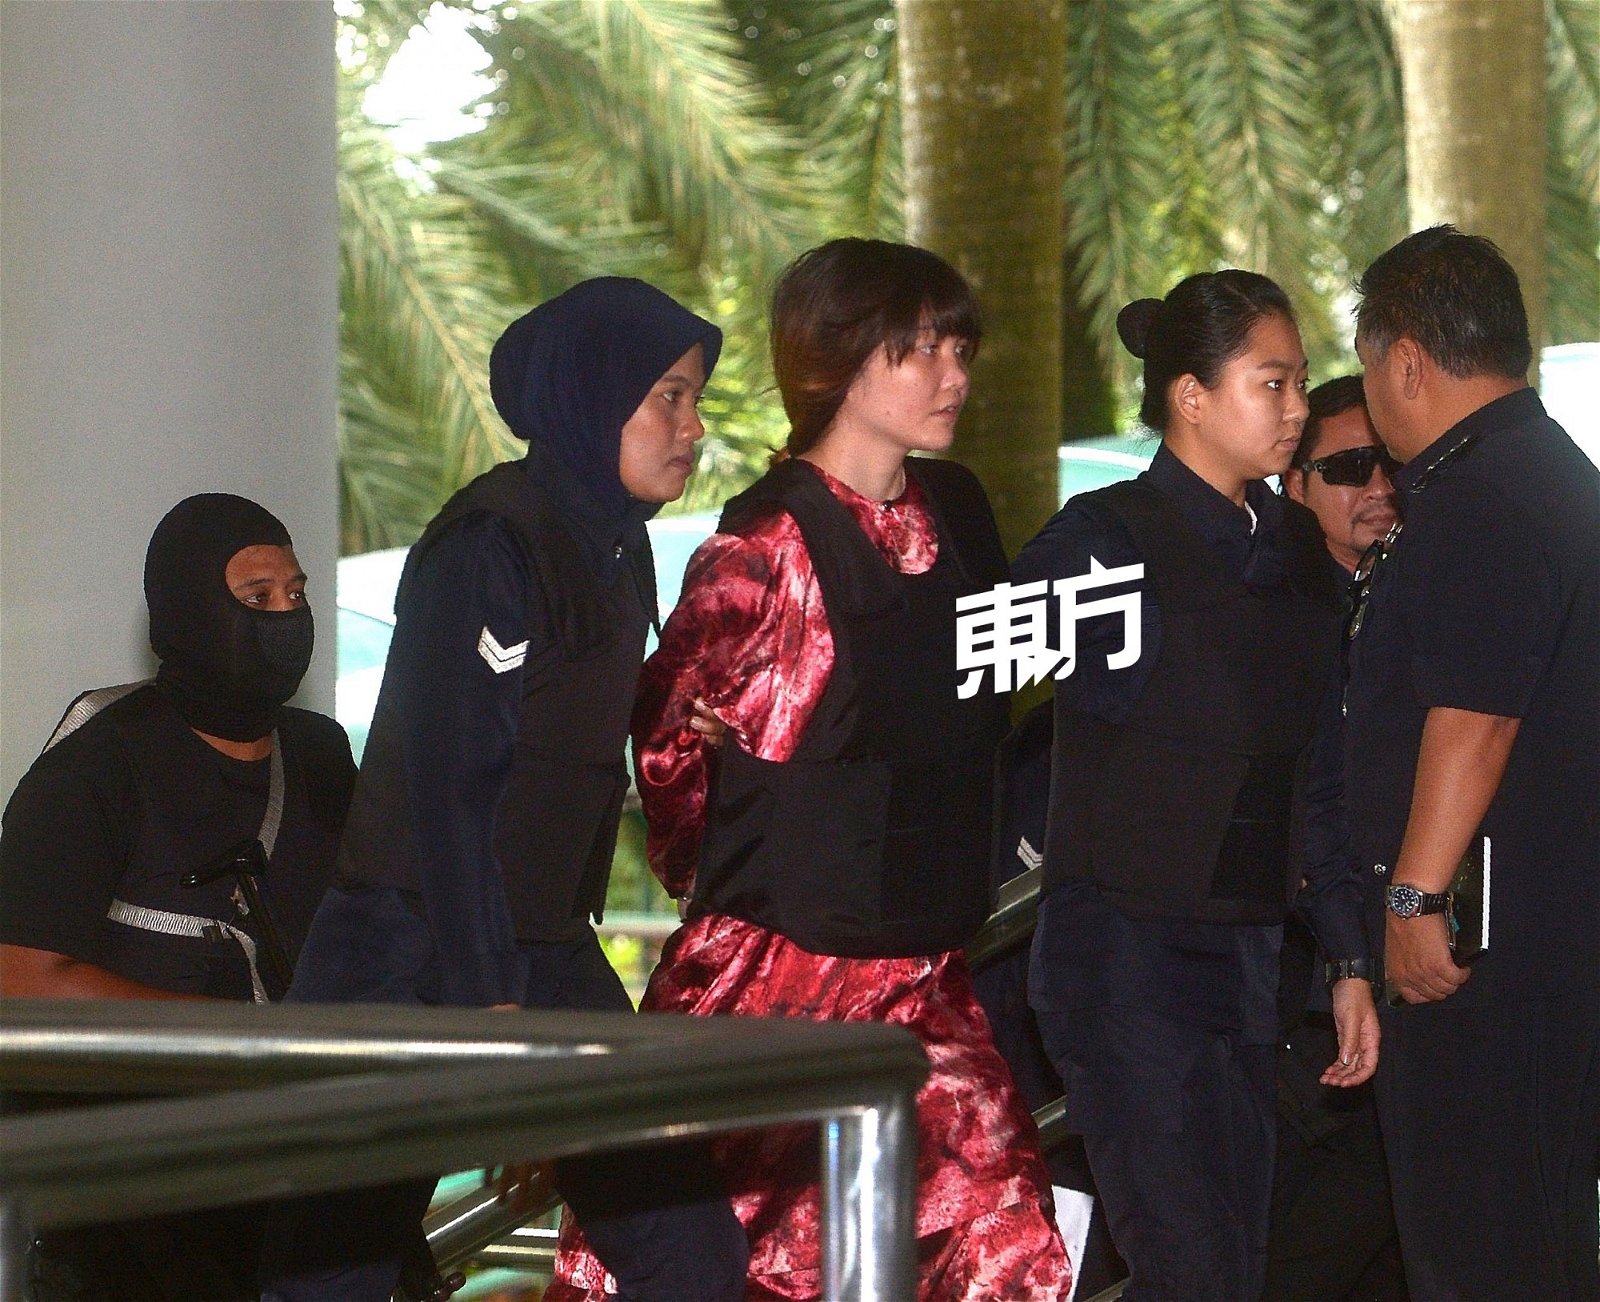 越南籍被告段悌香（中）在特警和女警的押送下，抵达莎阿南法庭出席案件审讯。 （摄影：陈启新）